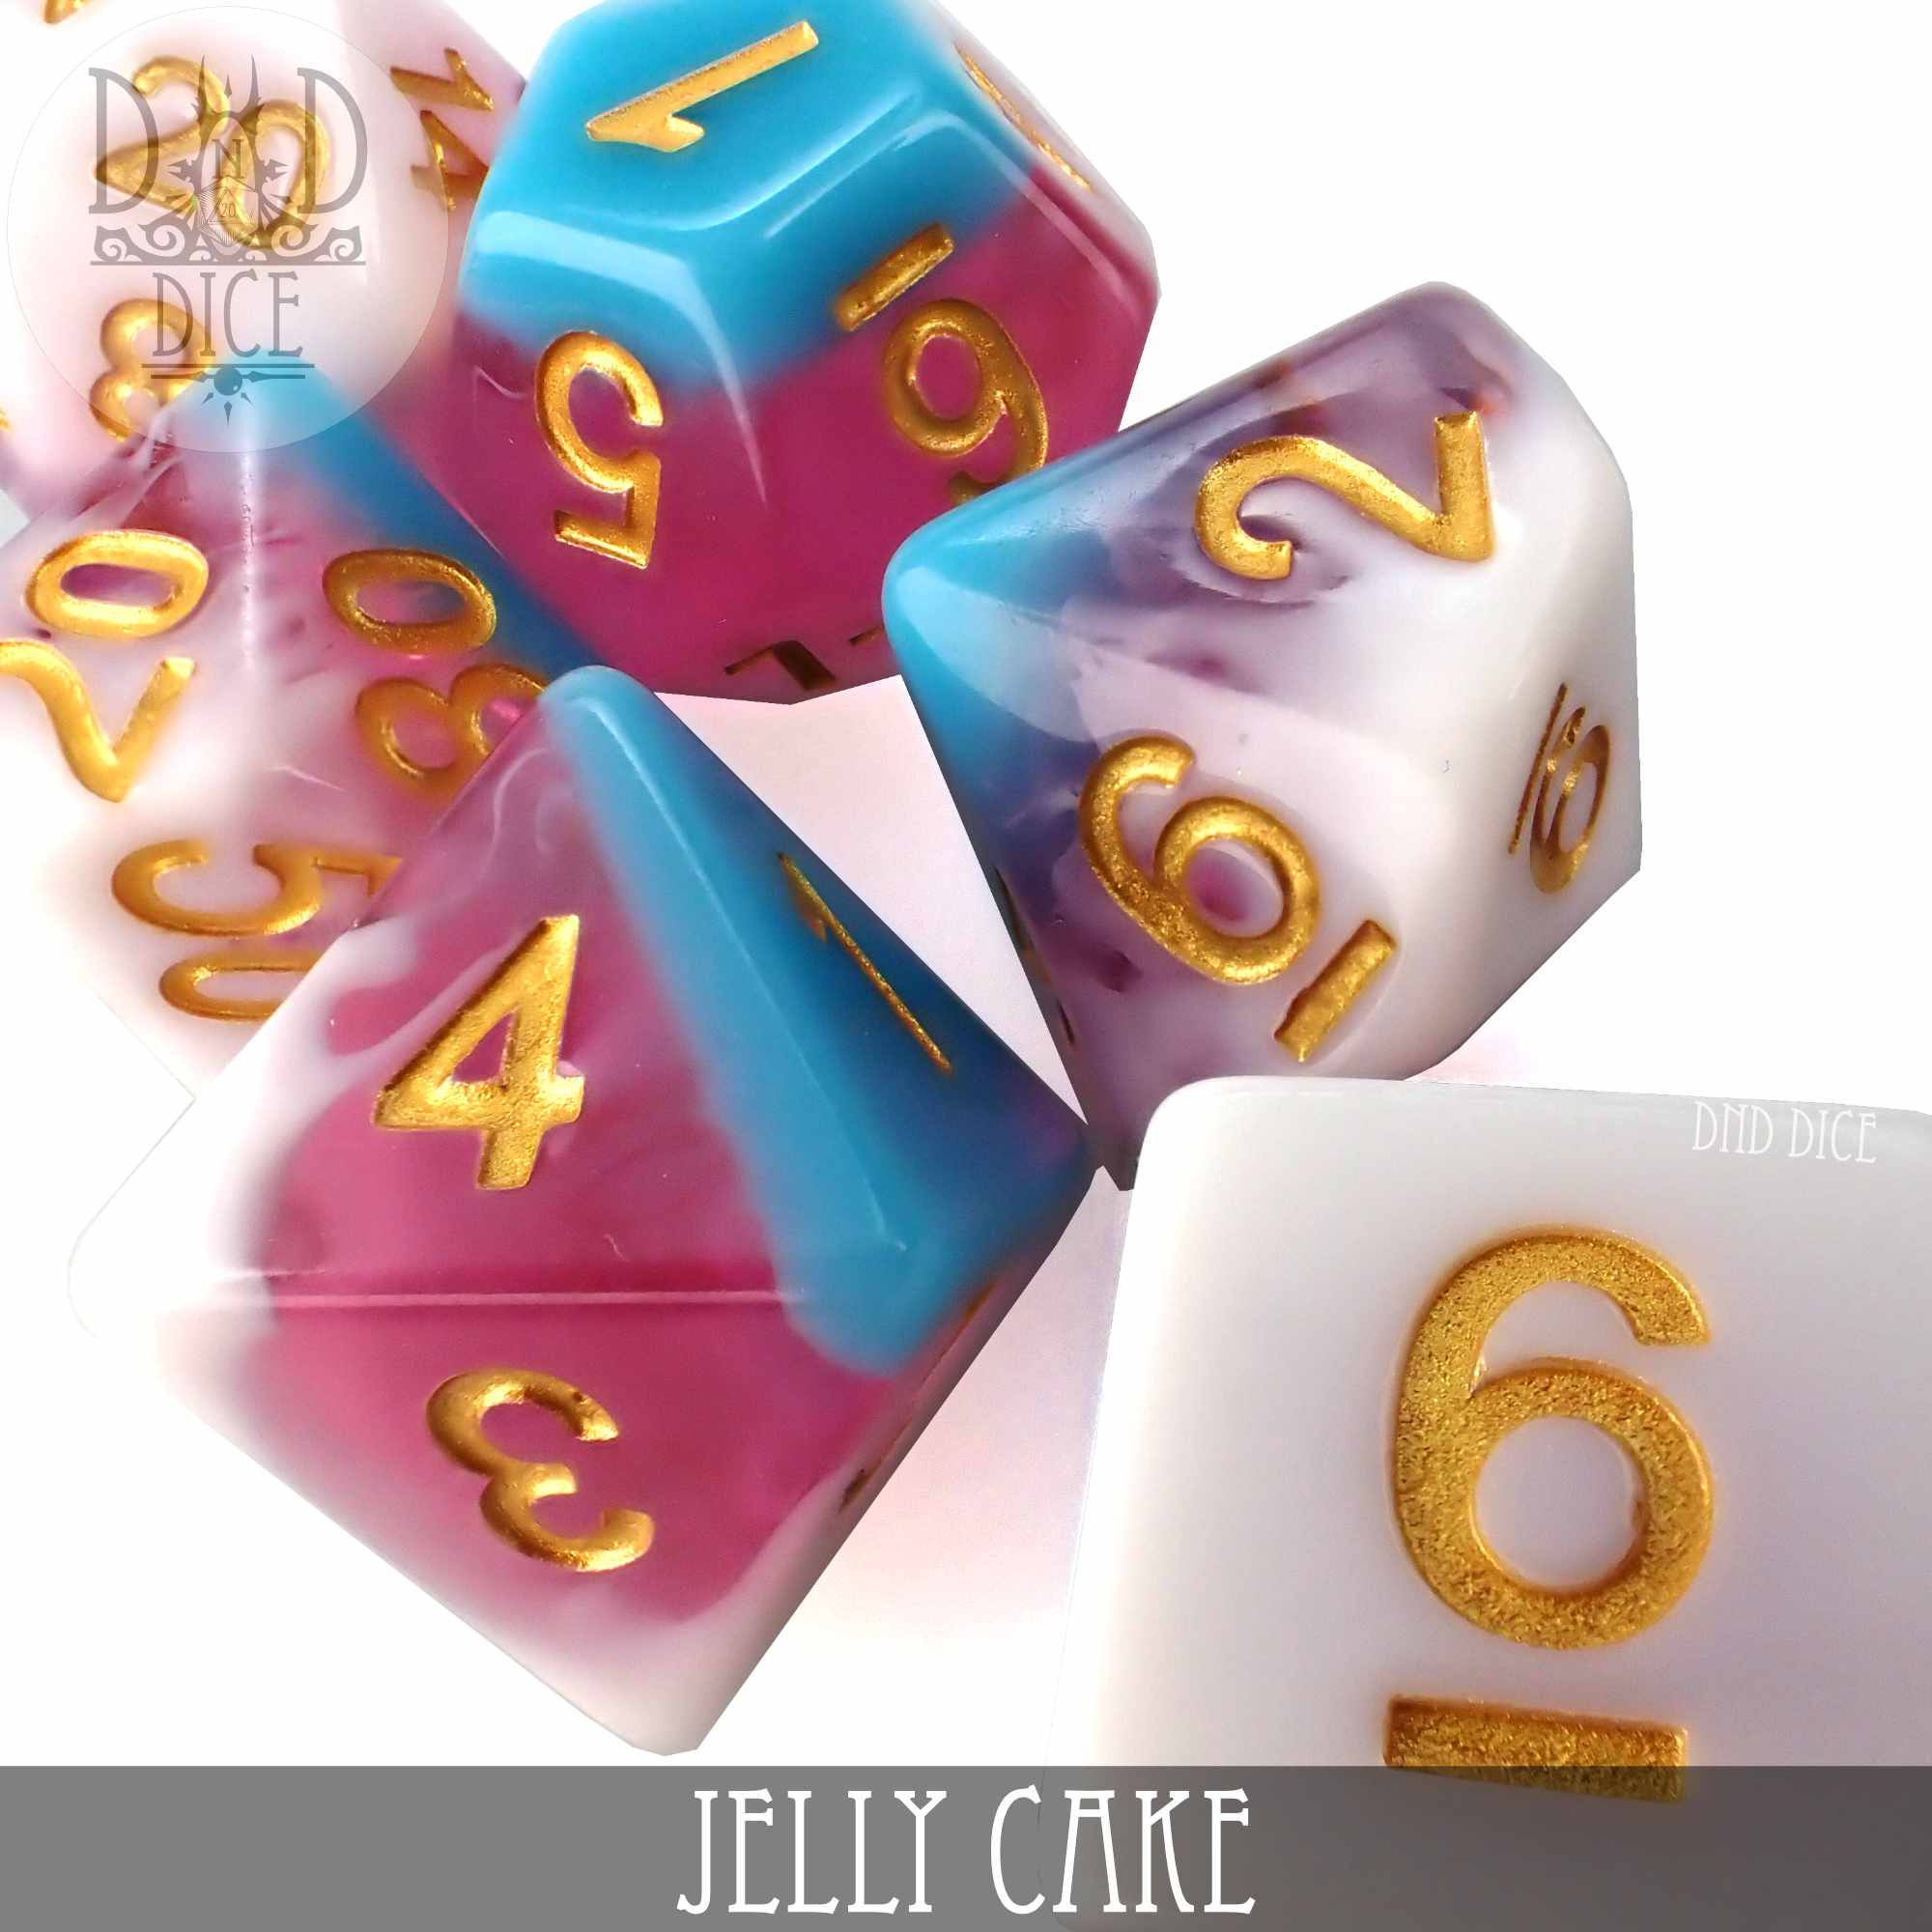 Jelly Cake Dice Set